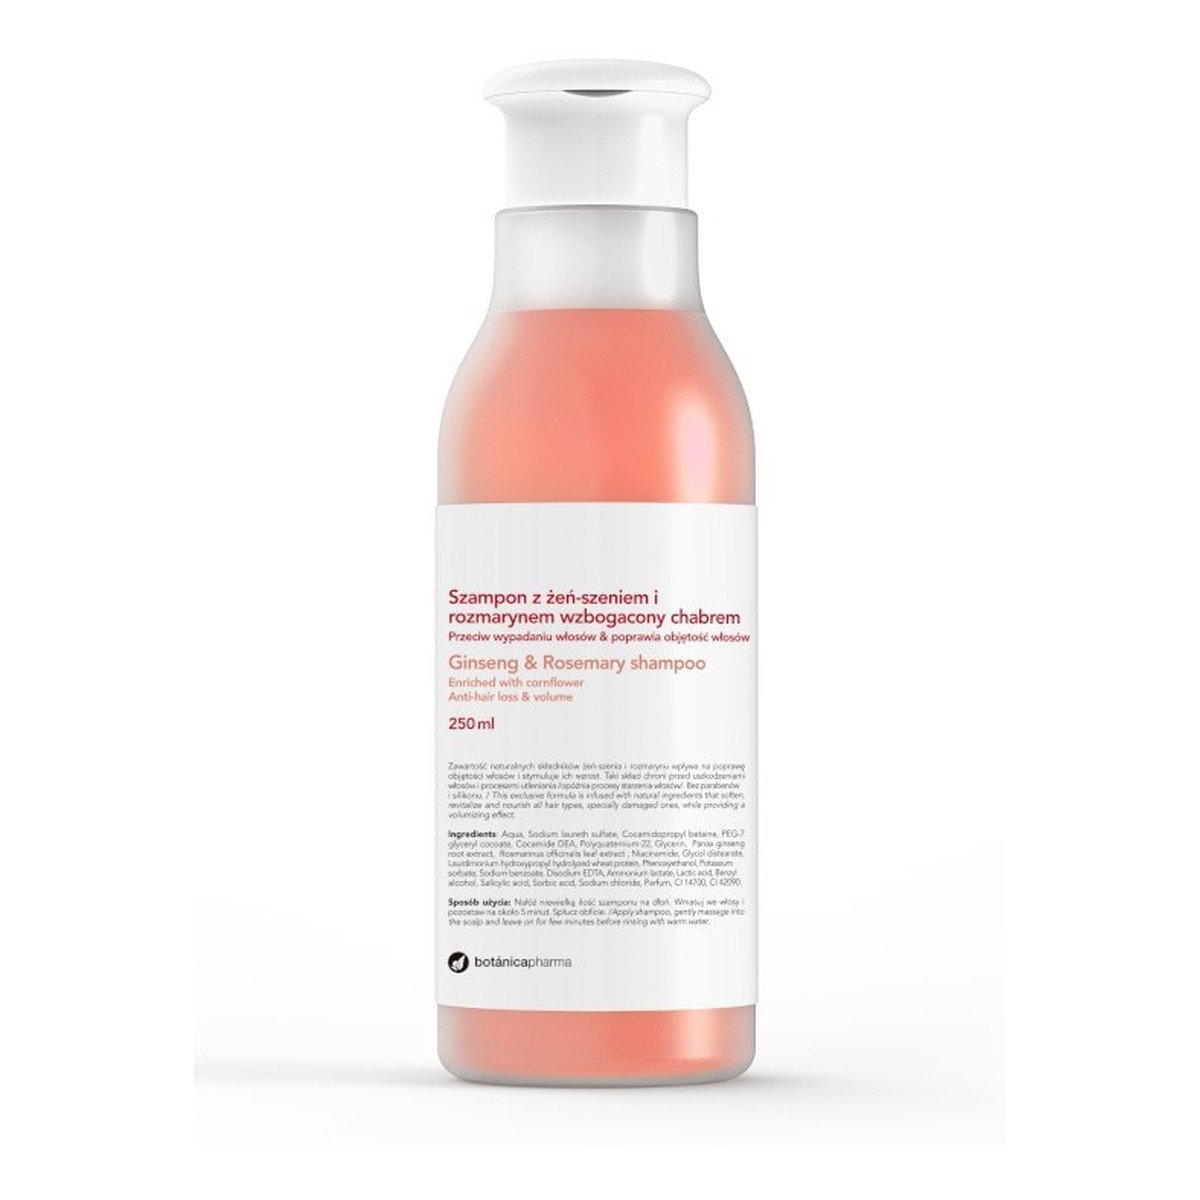 Botanicapharma Ginseng & Rosemary szampon przeciw wypadaniu włosów z żeń-szeniem i rozmarynem 250ml